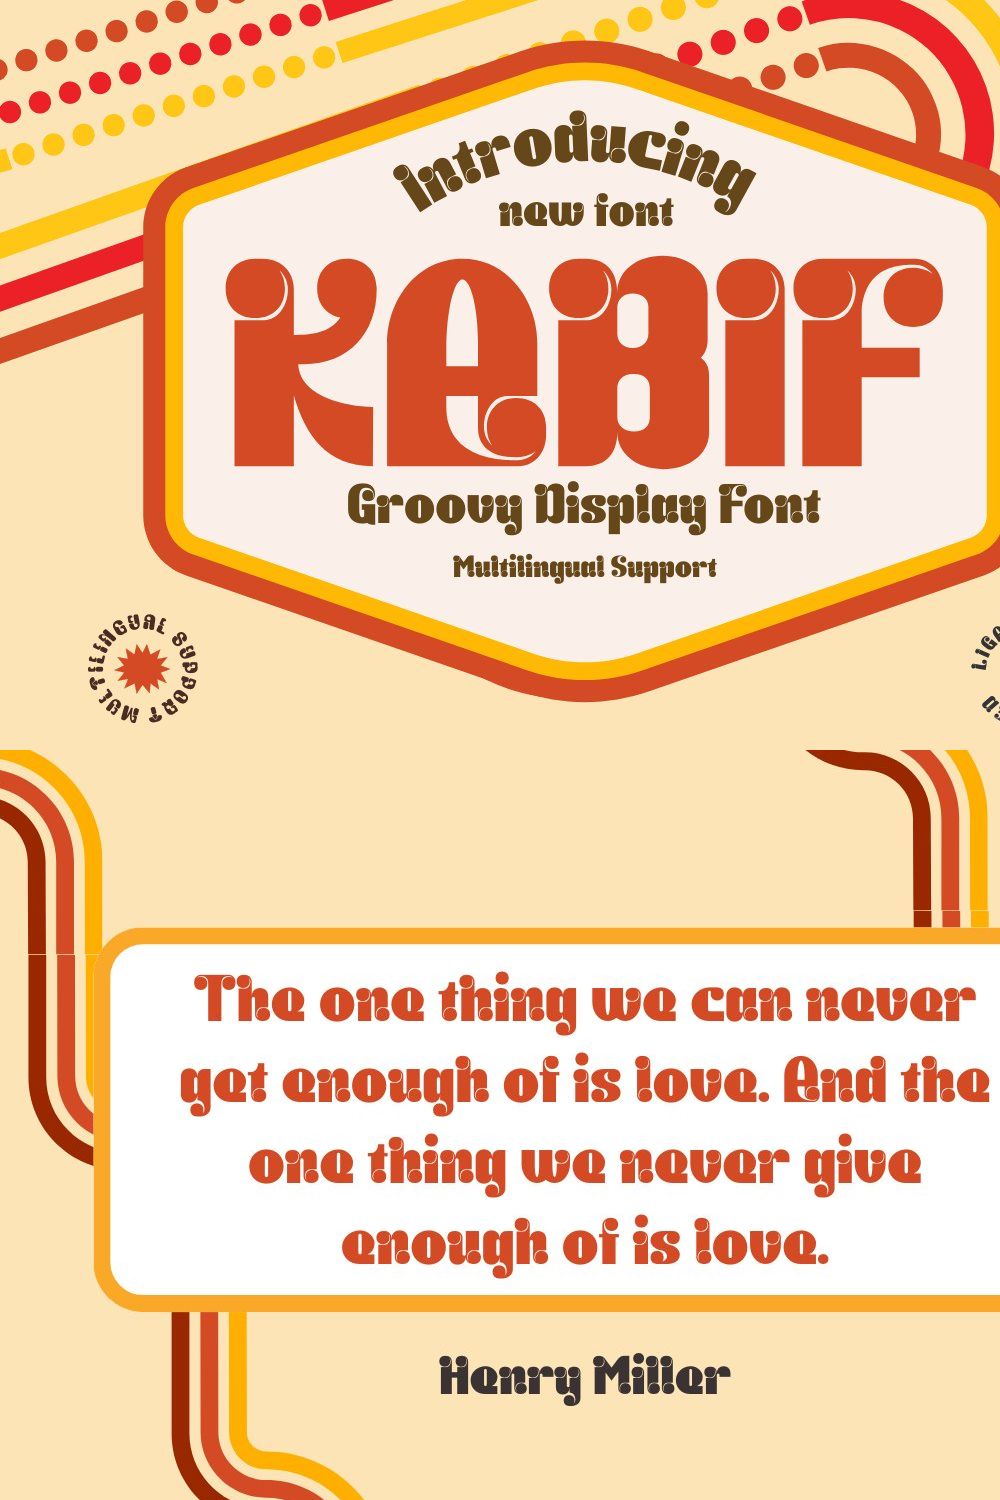 KABIF | Groovy Retro Font pinterest preview image.